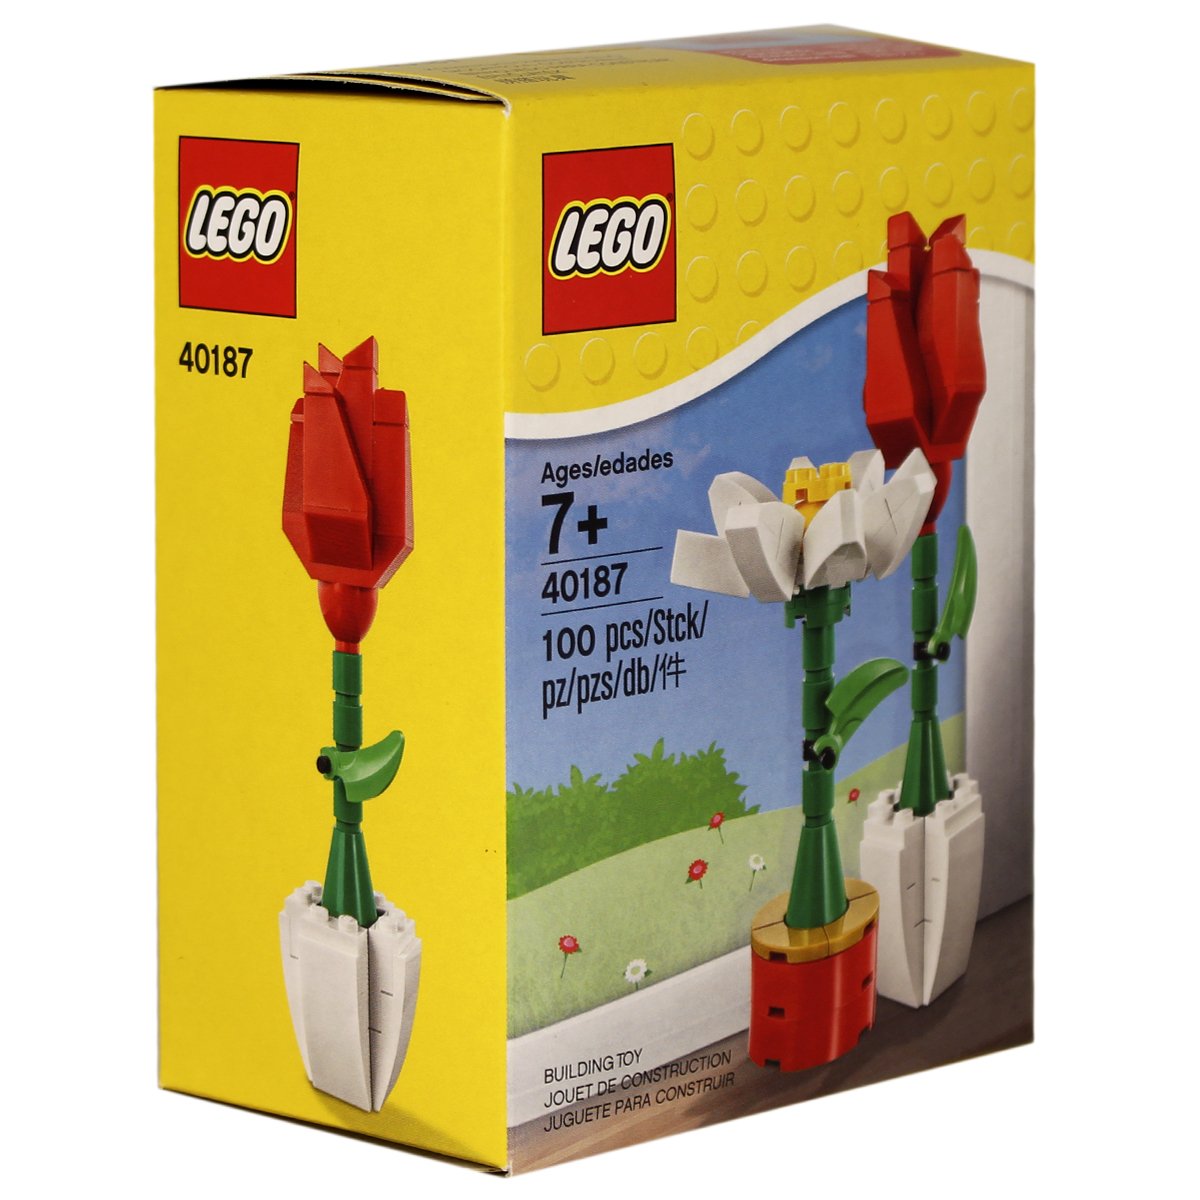 Lego Exclusive Display Pieces